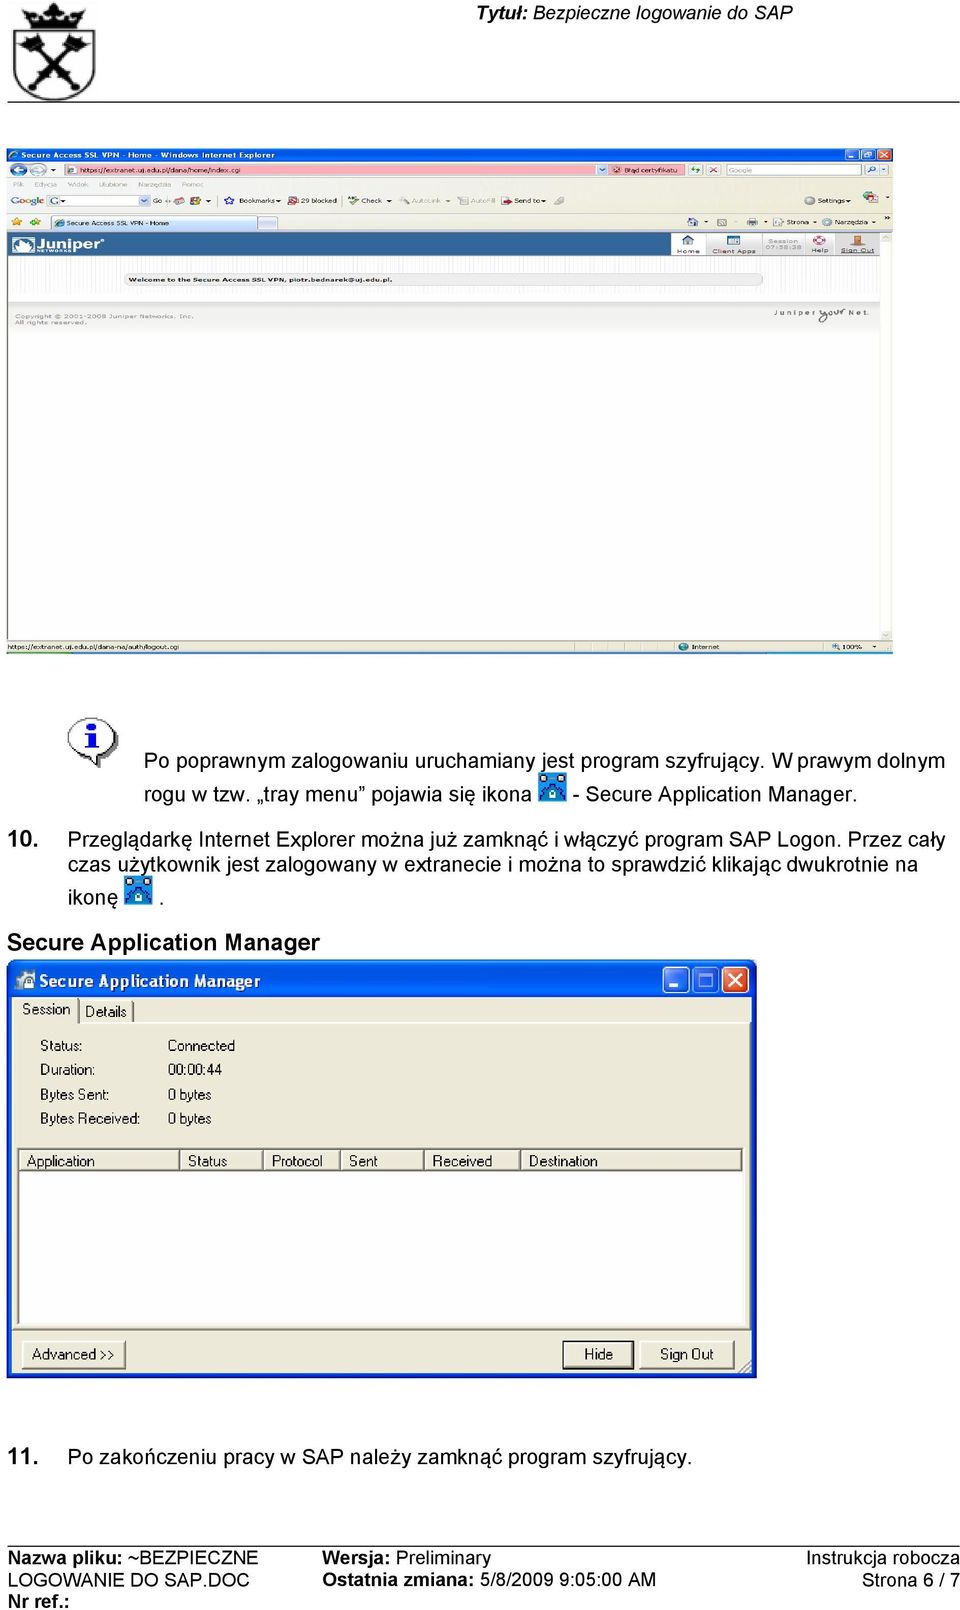 Przeglądarkę Internet Explorer można już zamknąć i włączyć program SAP Logon.